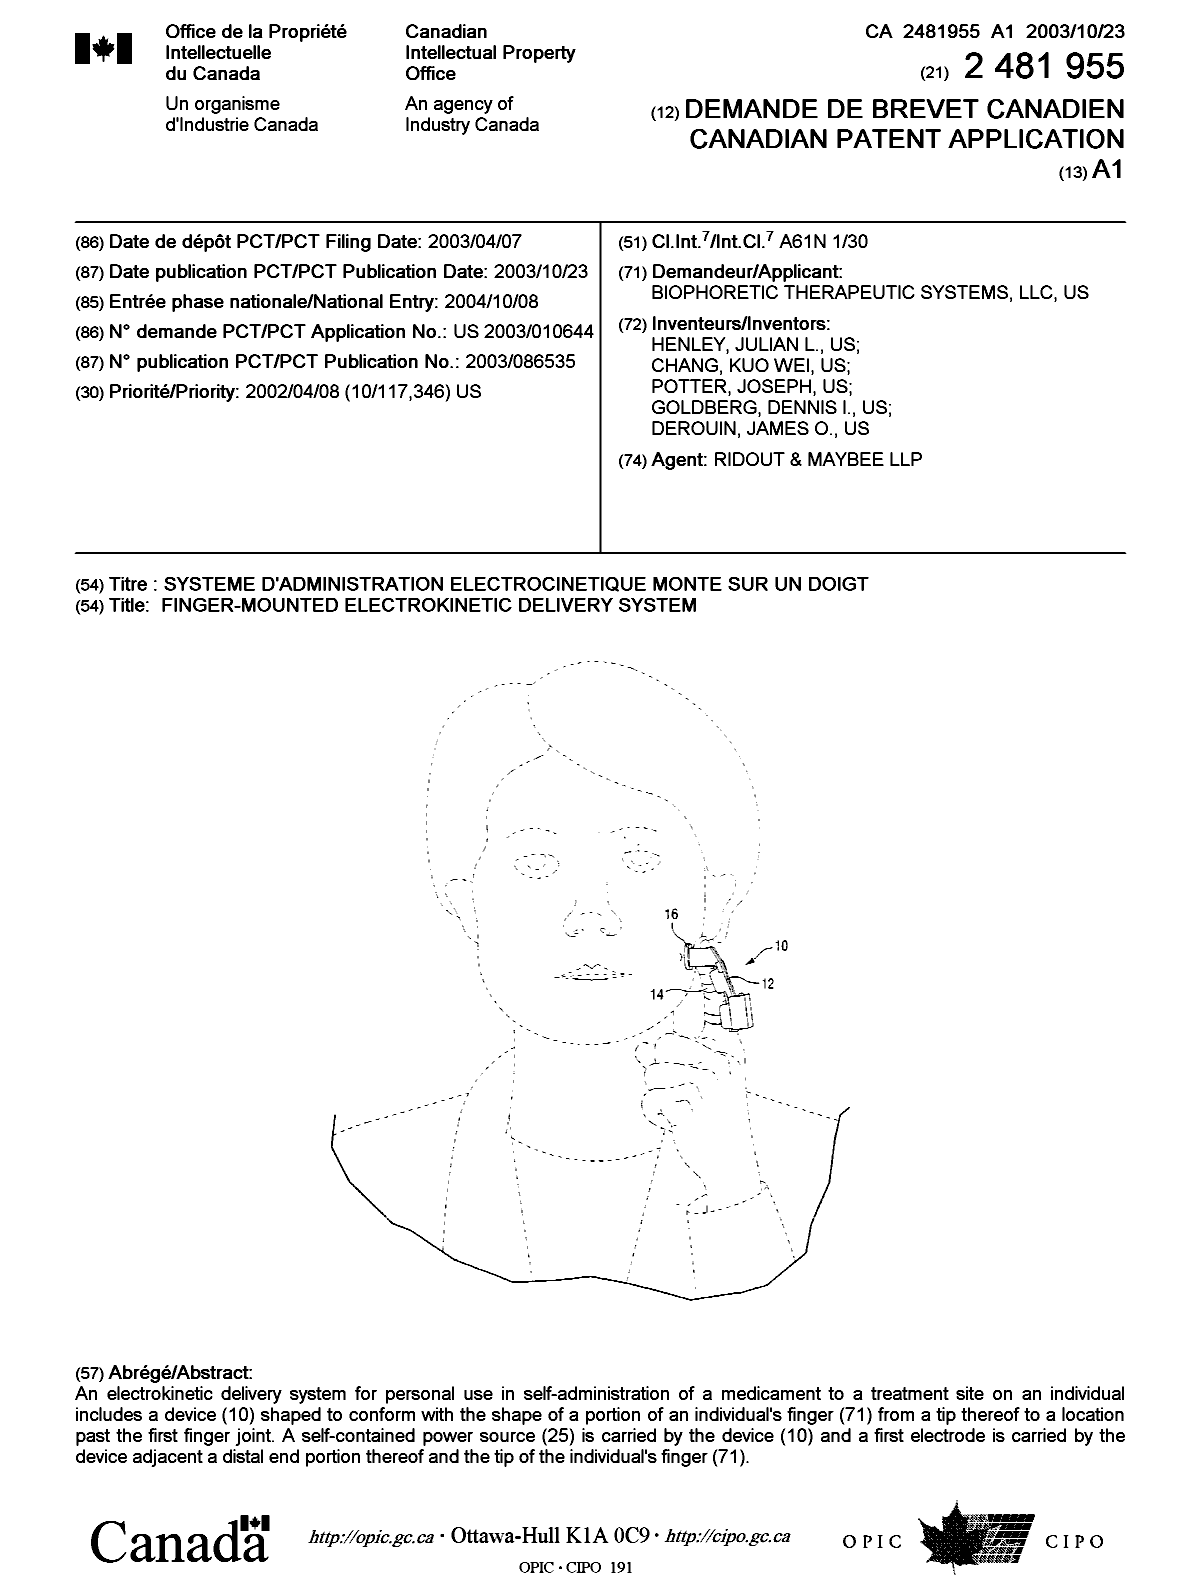 Document de brevet canadien 2481955. Page couverture 20041216. Image 1 de 1